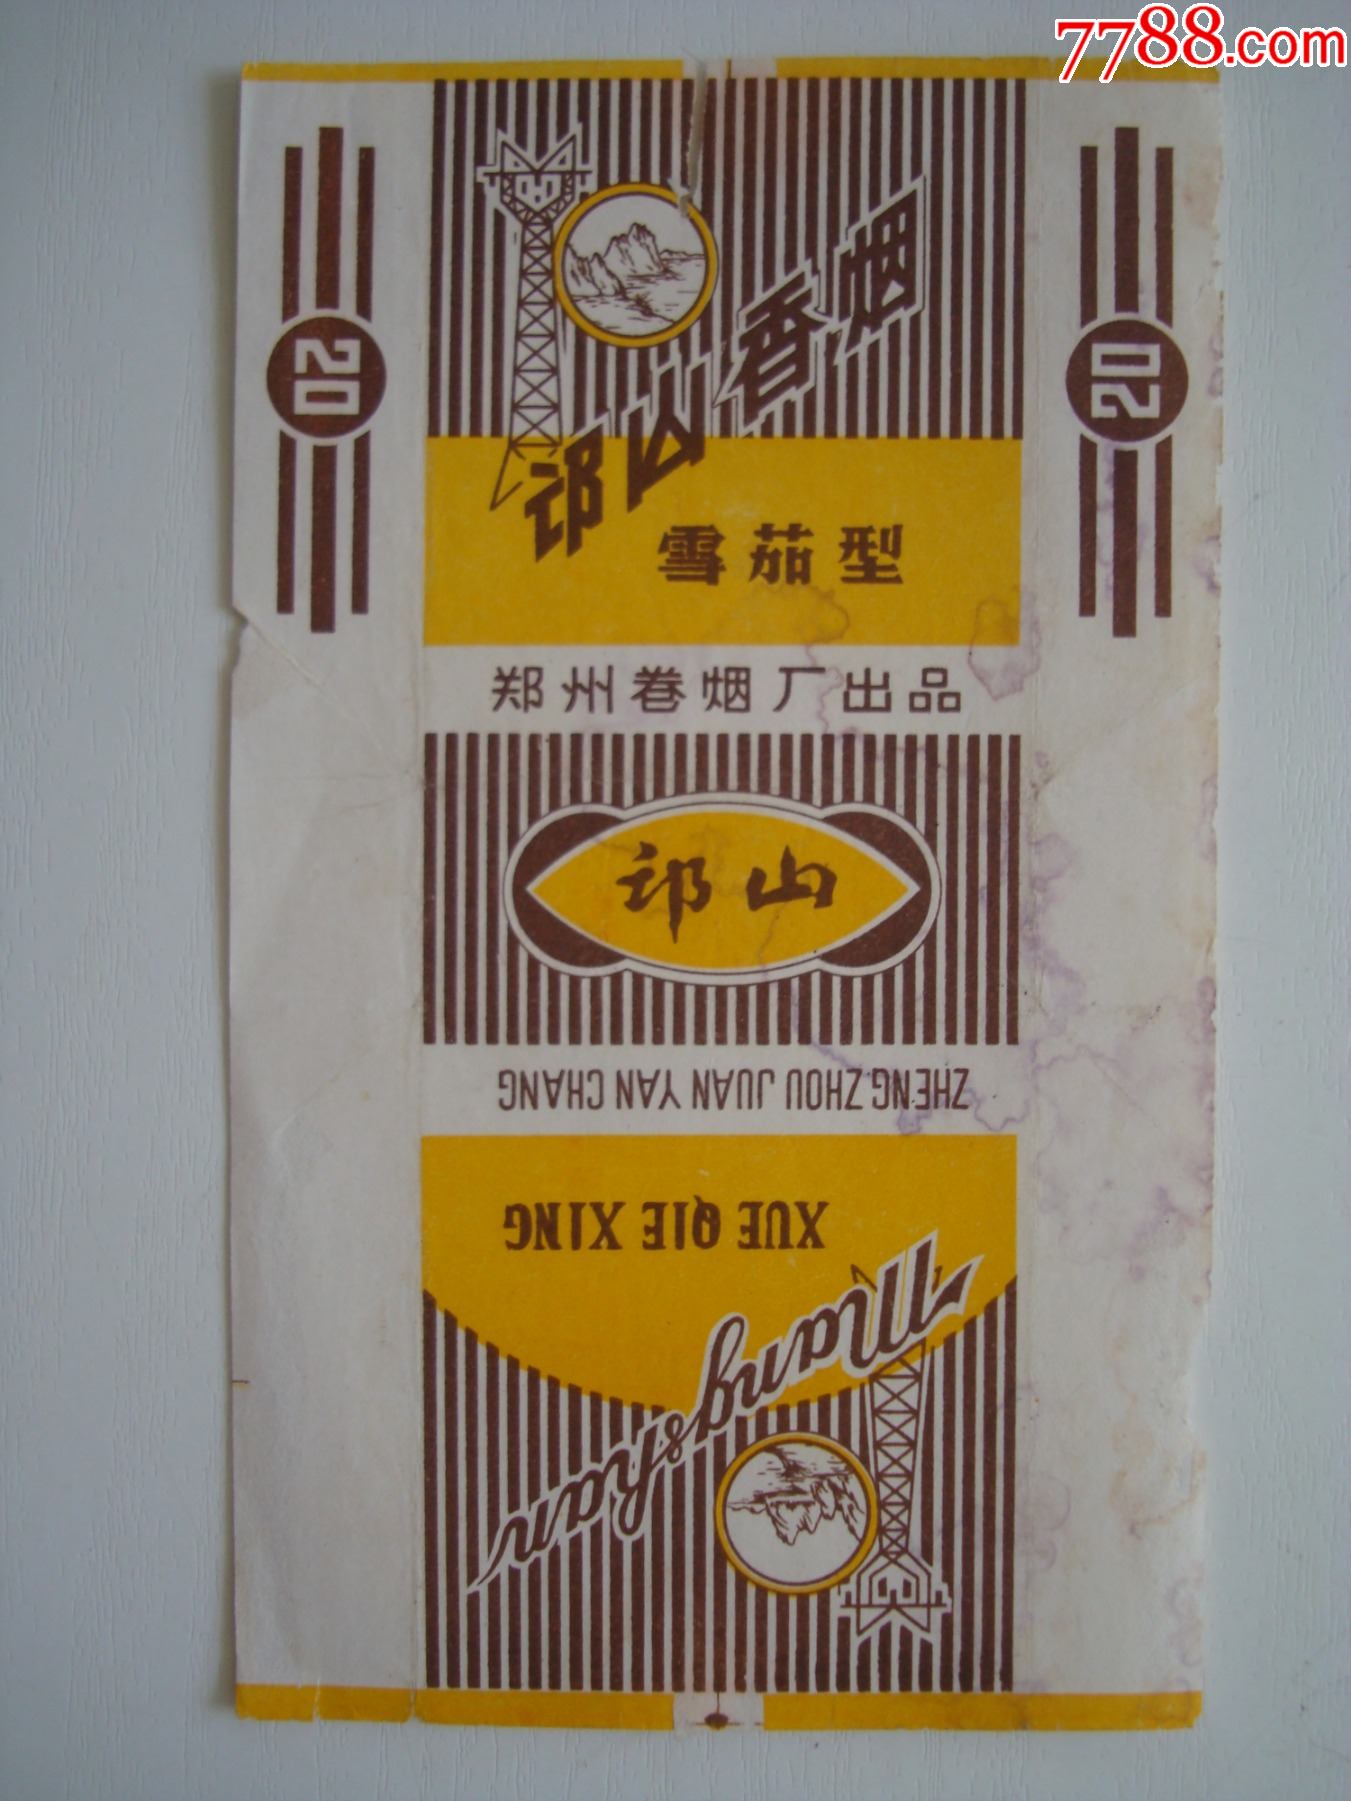 邙山――郑州卷烟厂出品――70s标